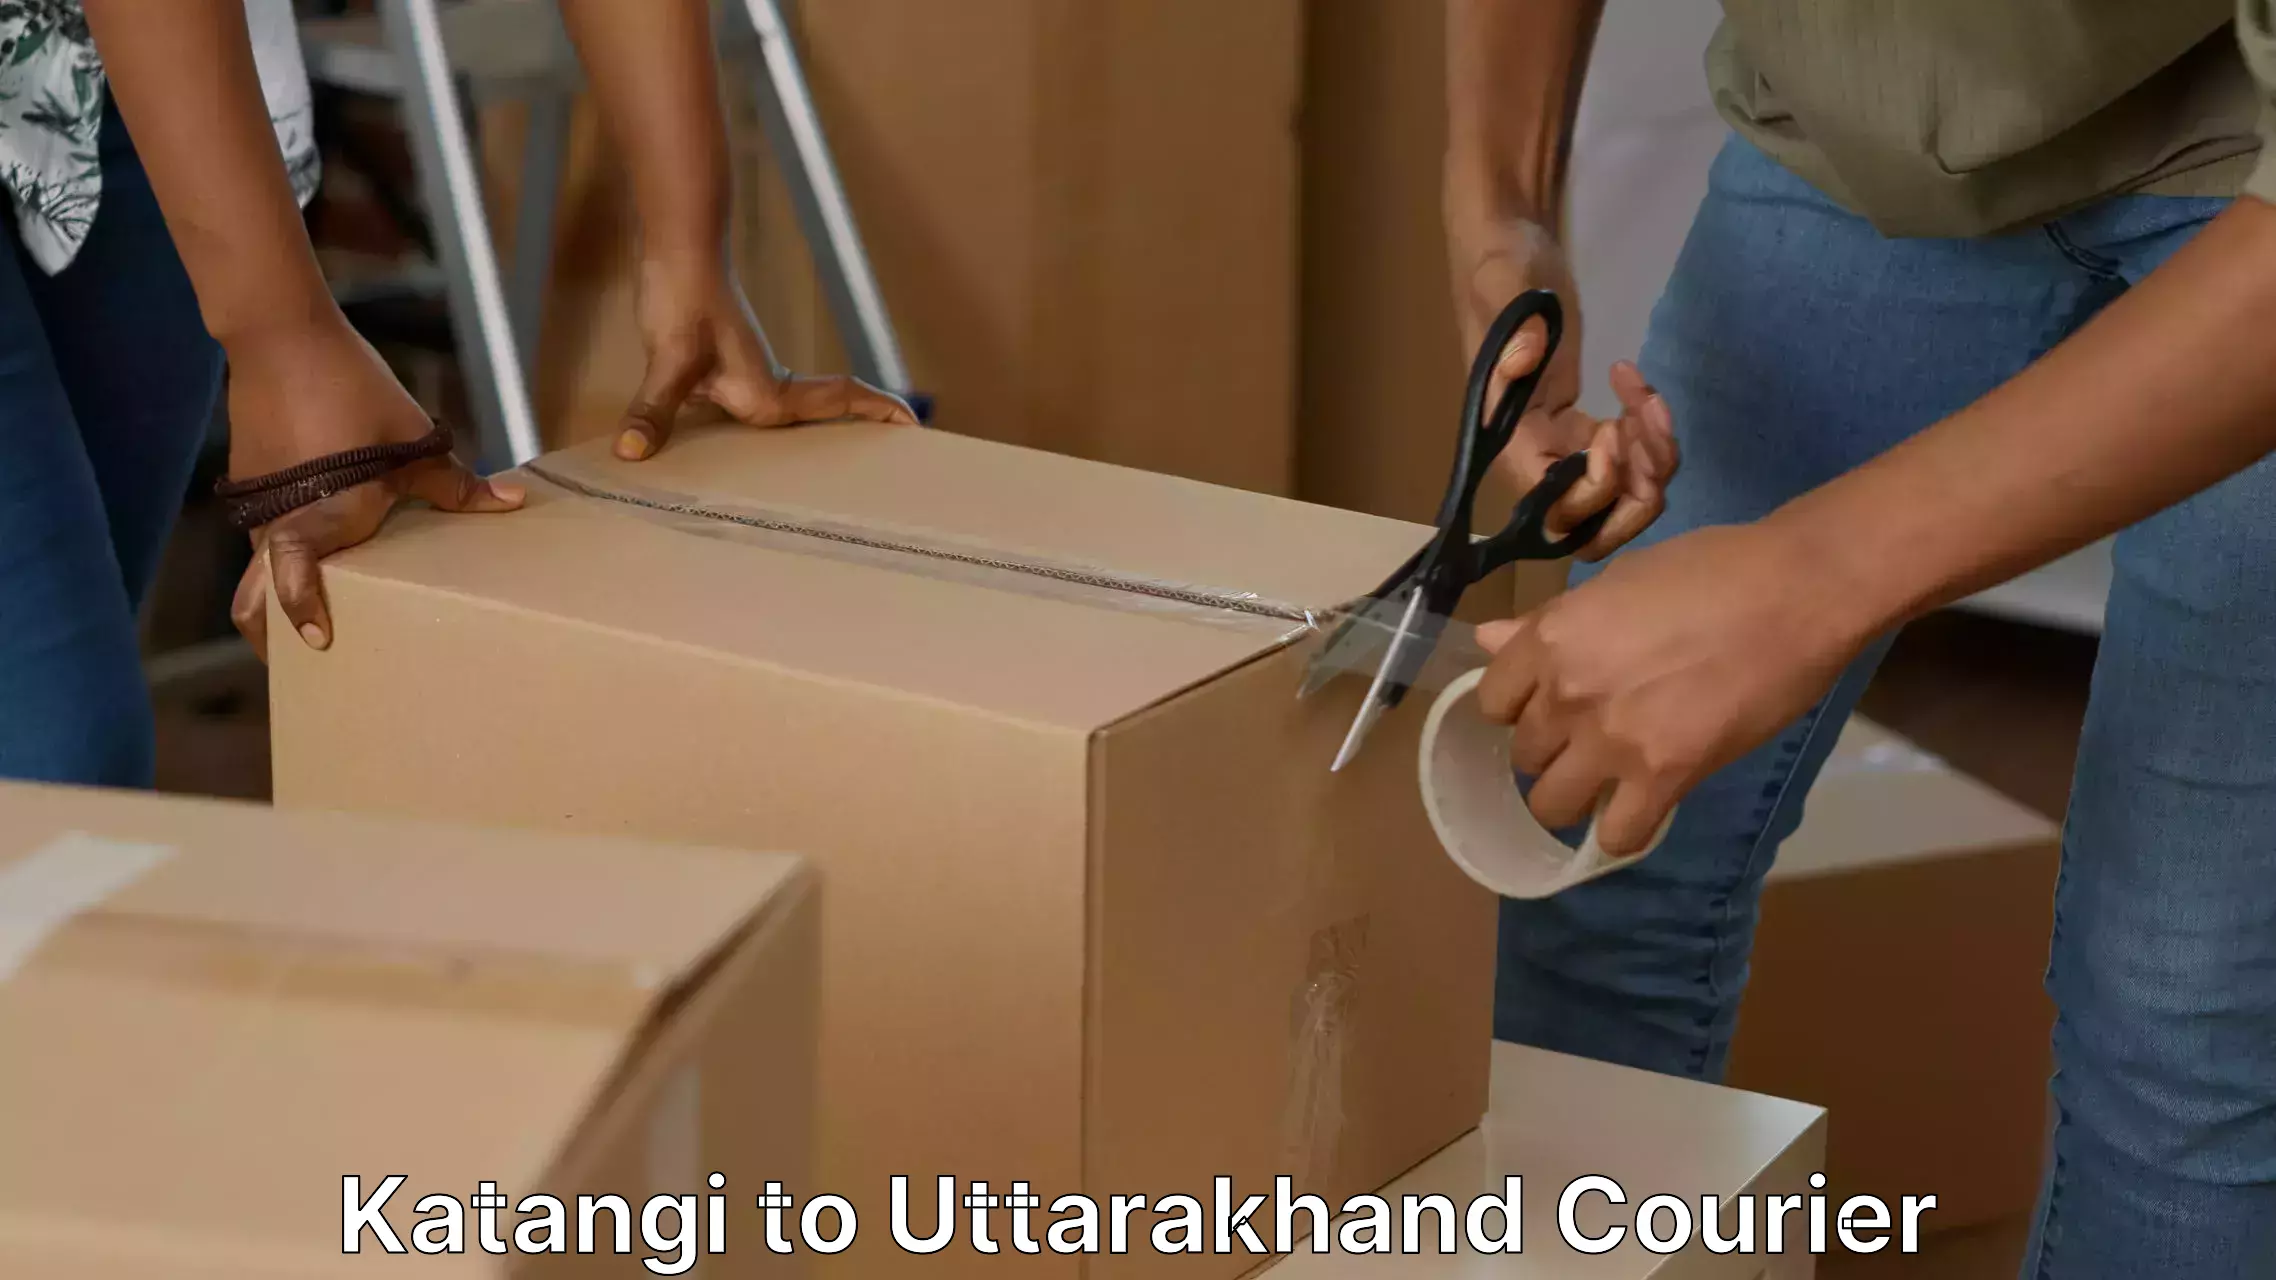 Quality moving company Katangi to Uttarakhand